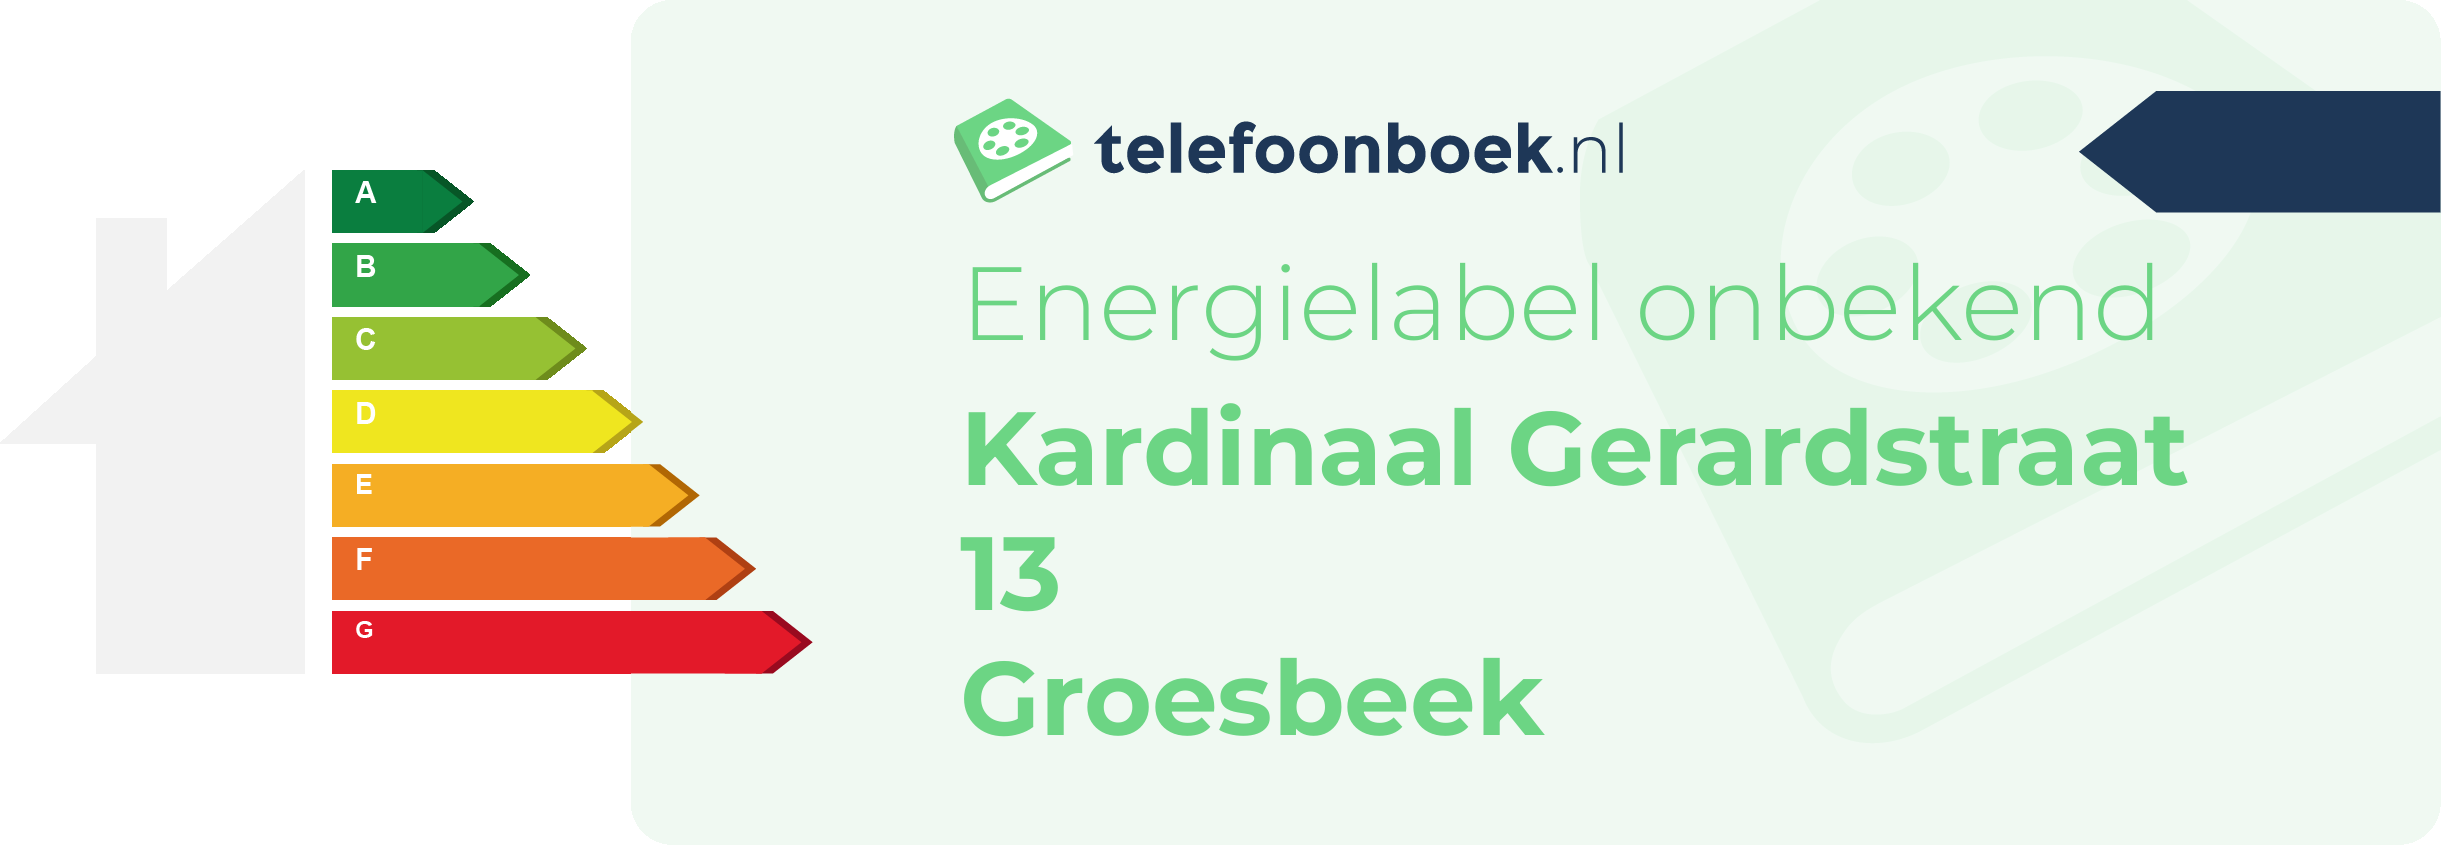 Energielabel Kardinaal Gerardstraat 13 Groesbeek